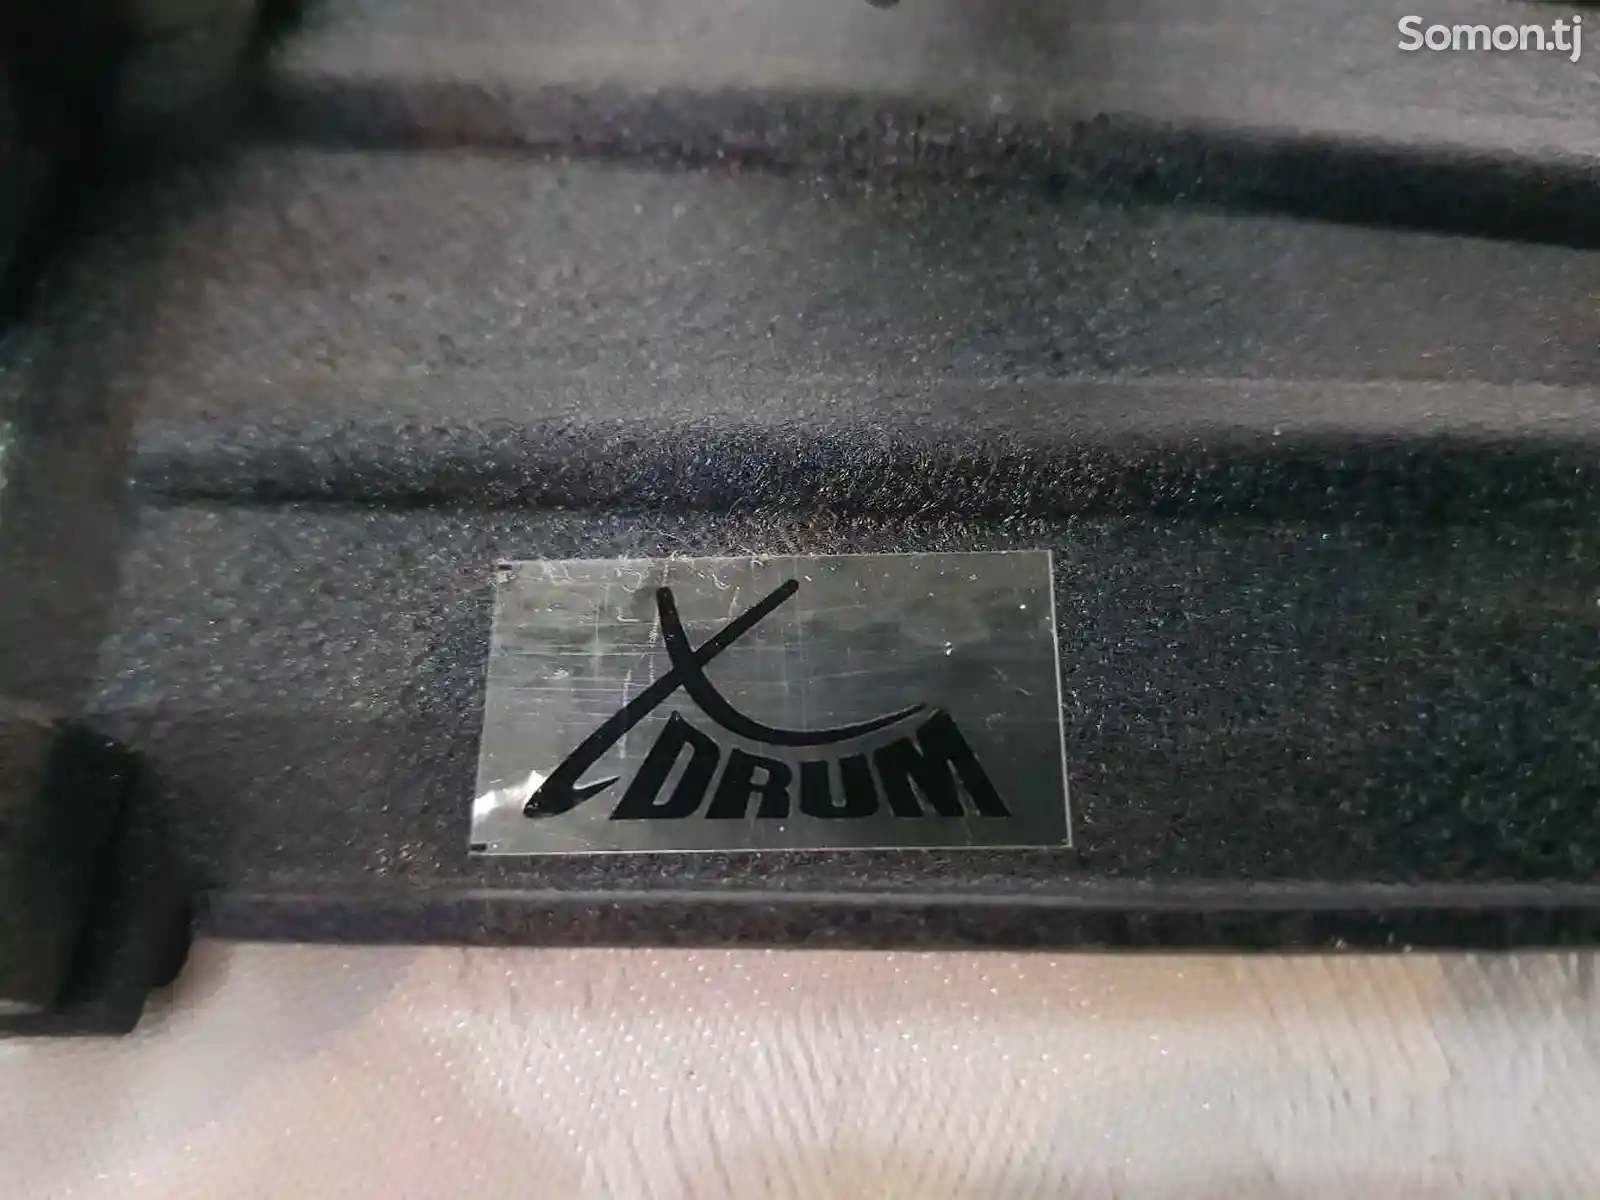 Карданый педаль для барабана XDRUM-6